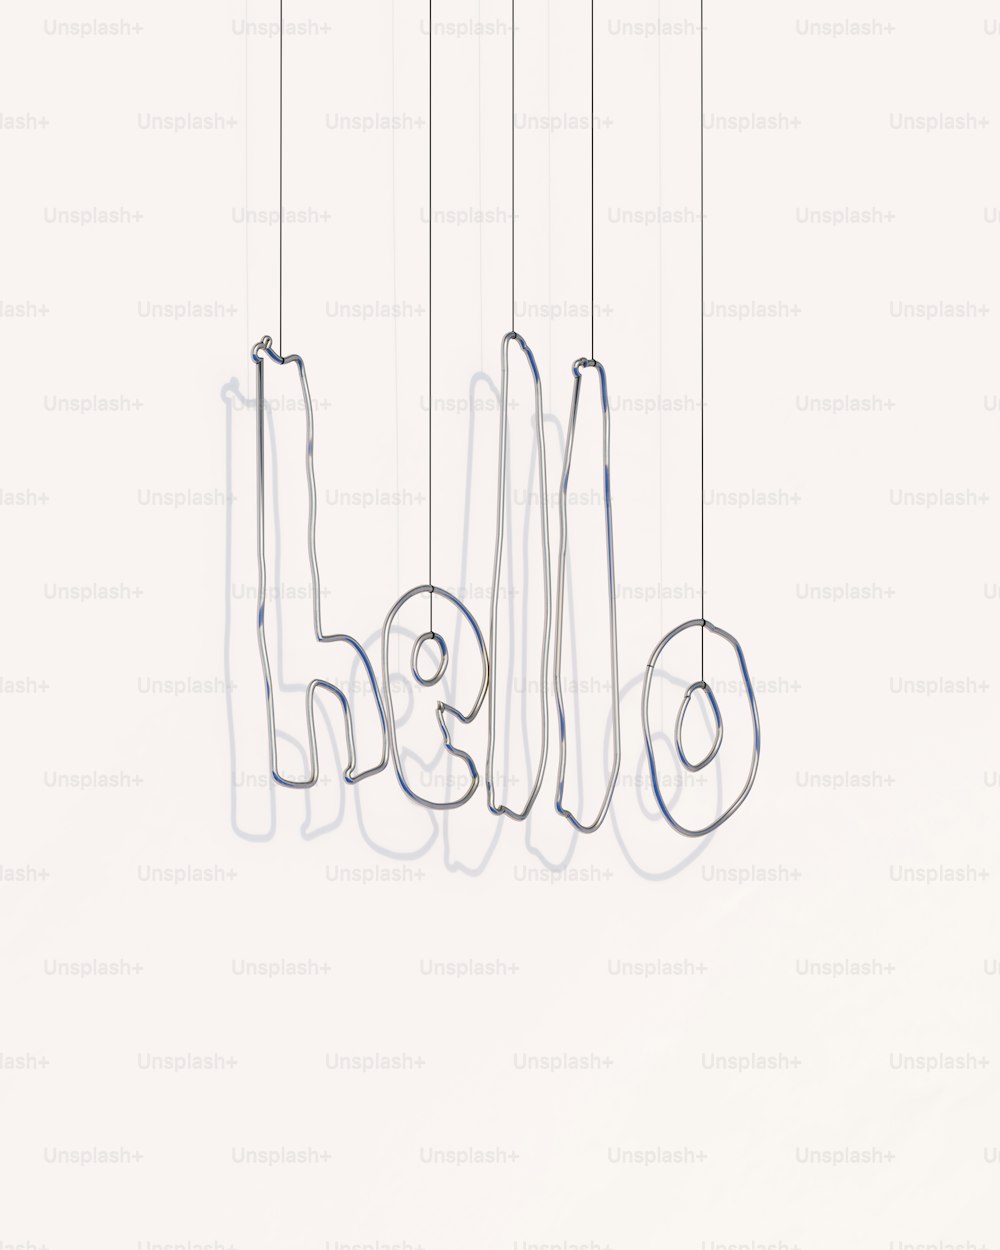 Un dibujo de un grupo de letras colgando de cuerdas